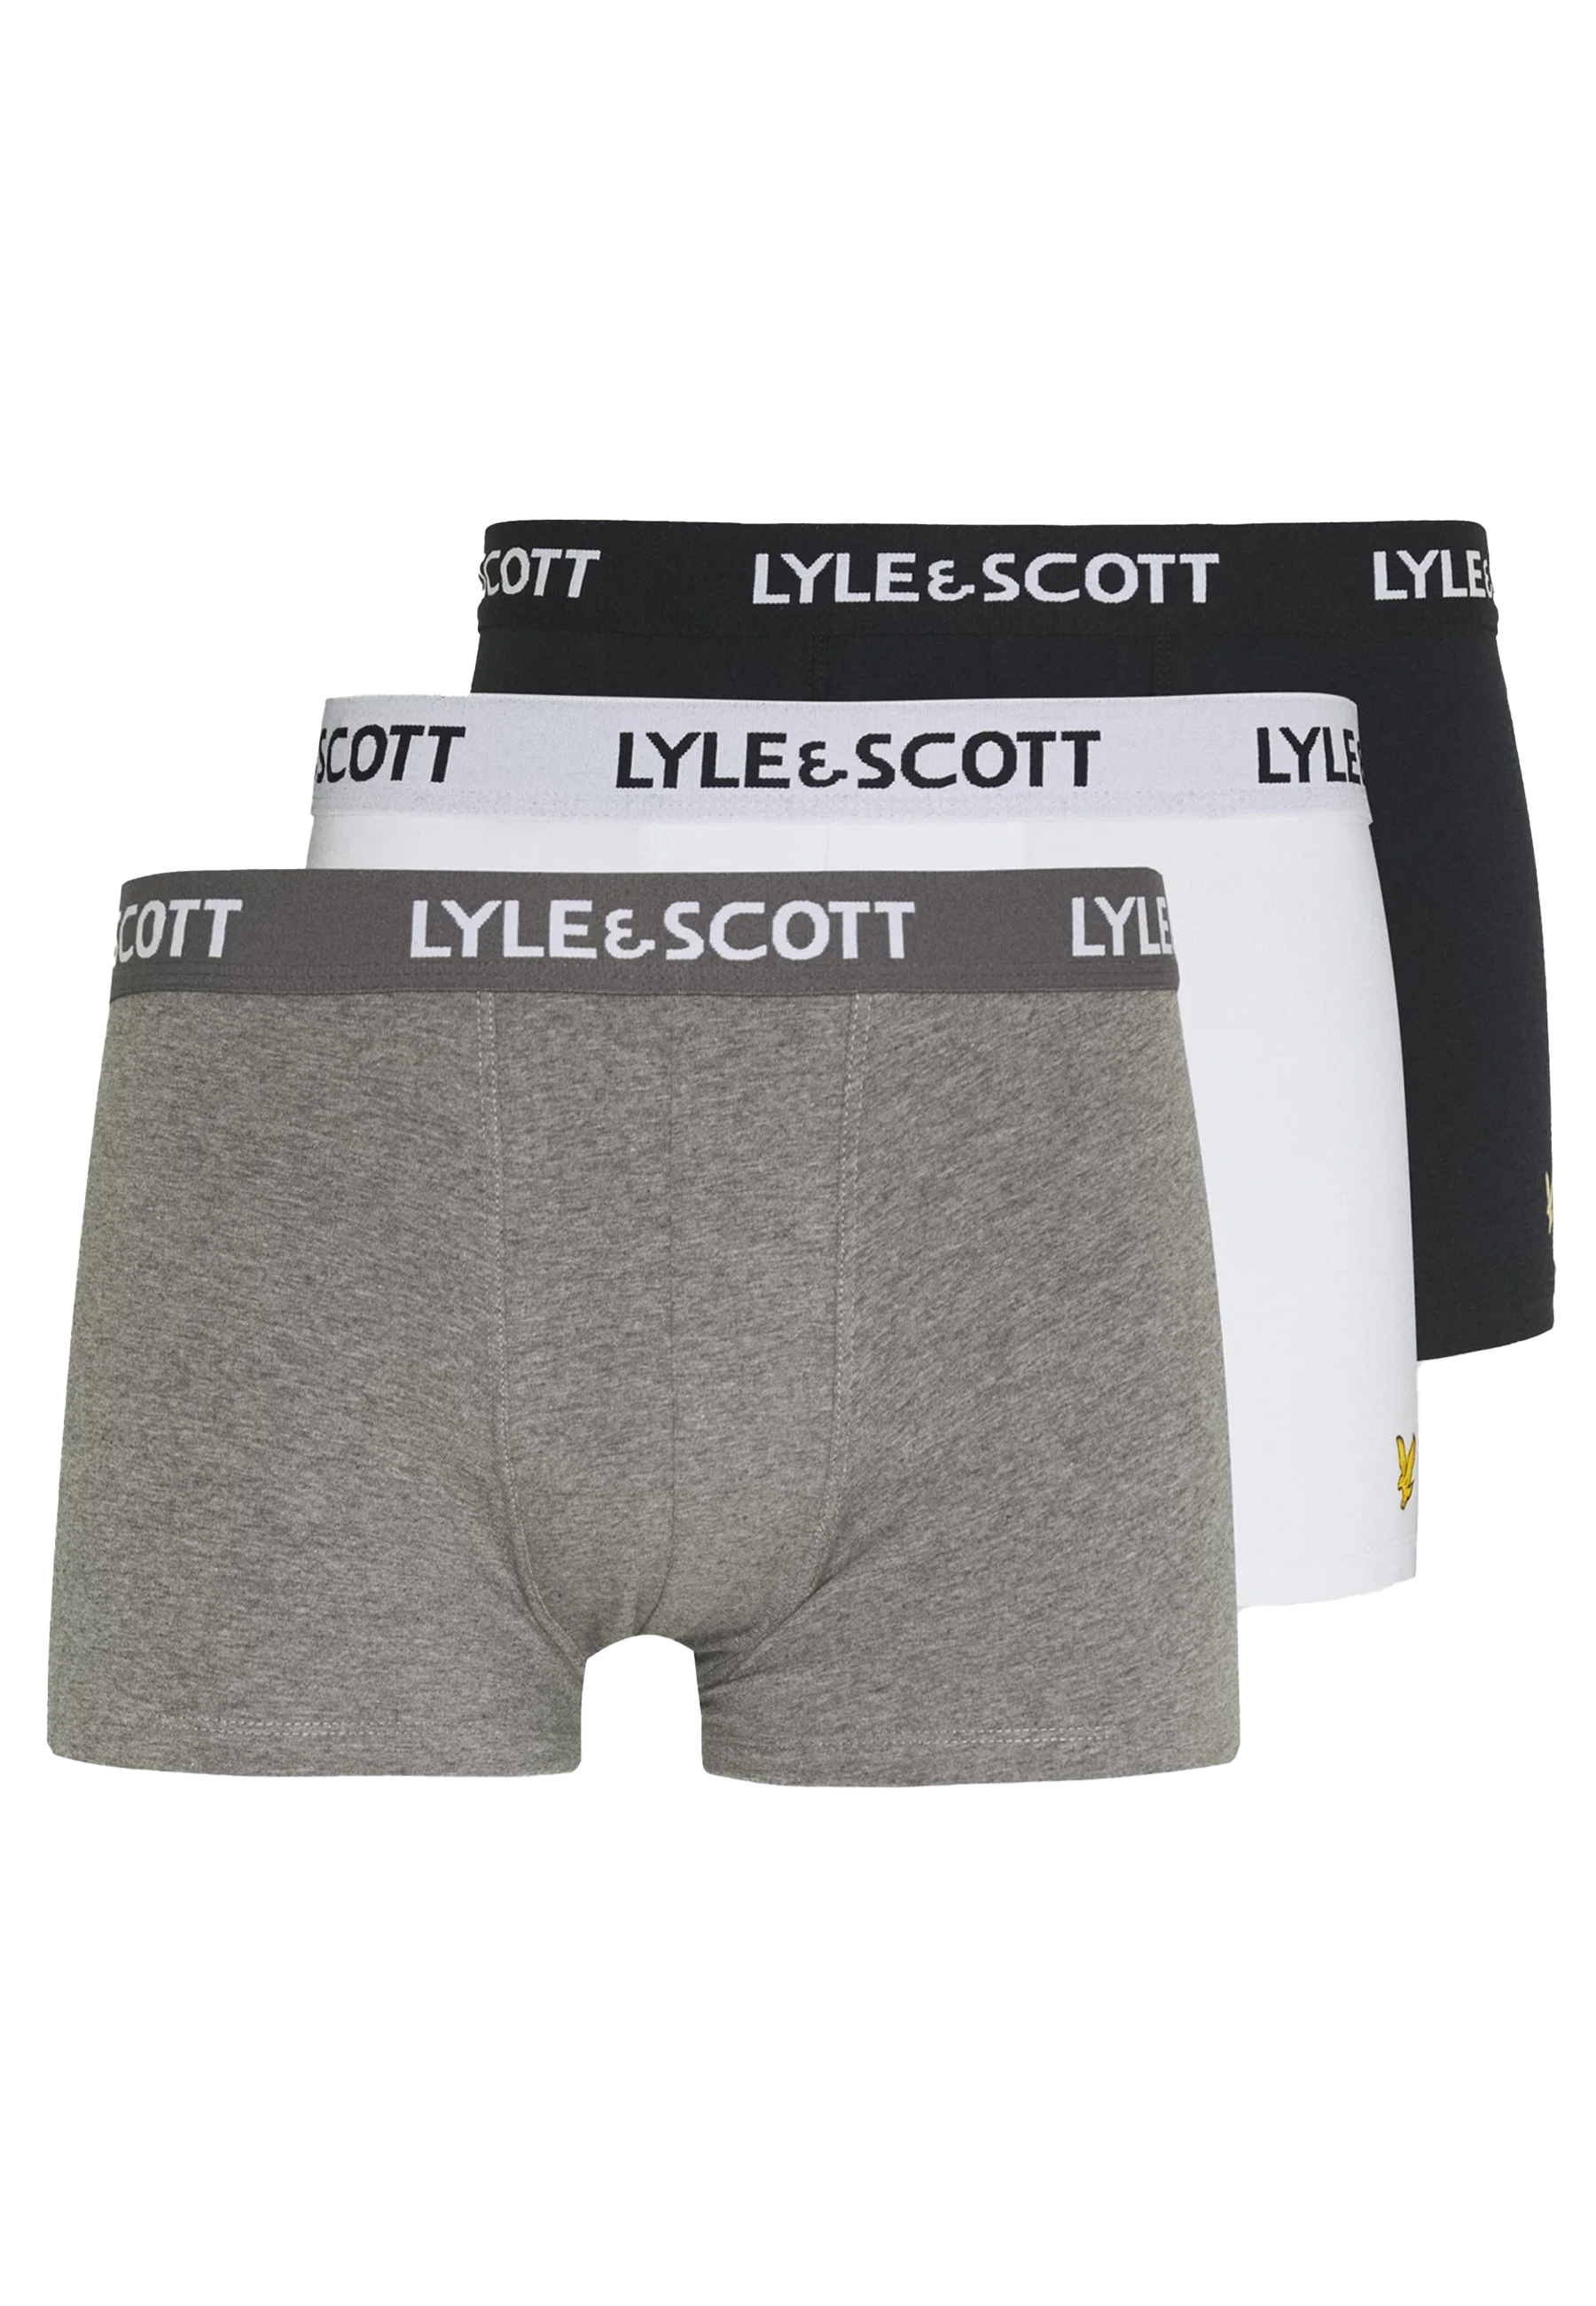 Lyle & Scott boxershorts multicolor Heren maat S